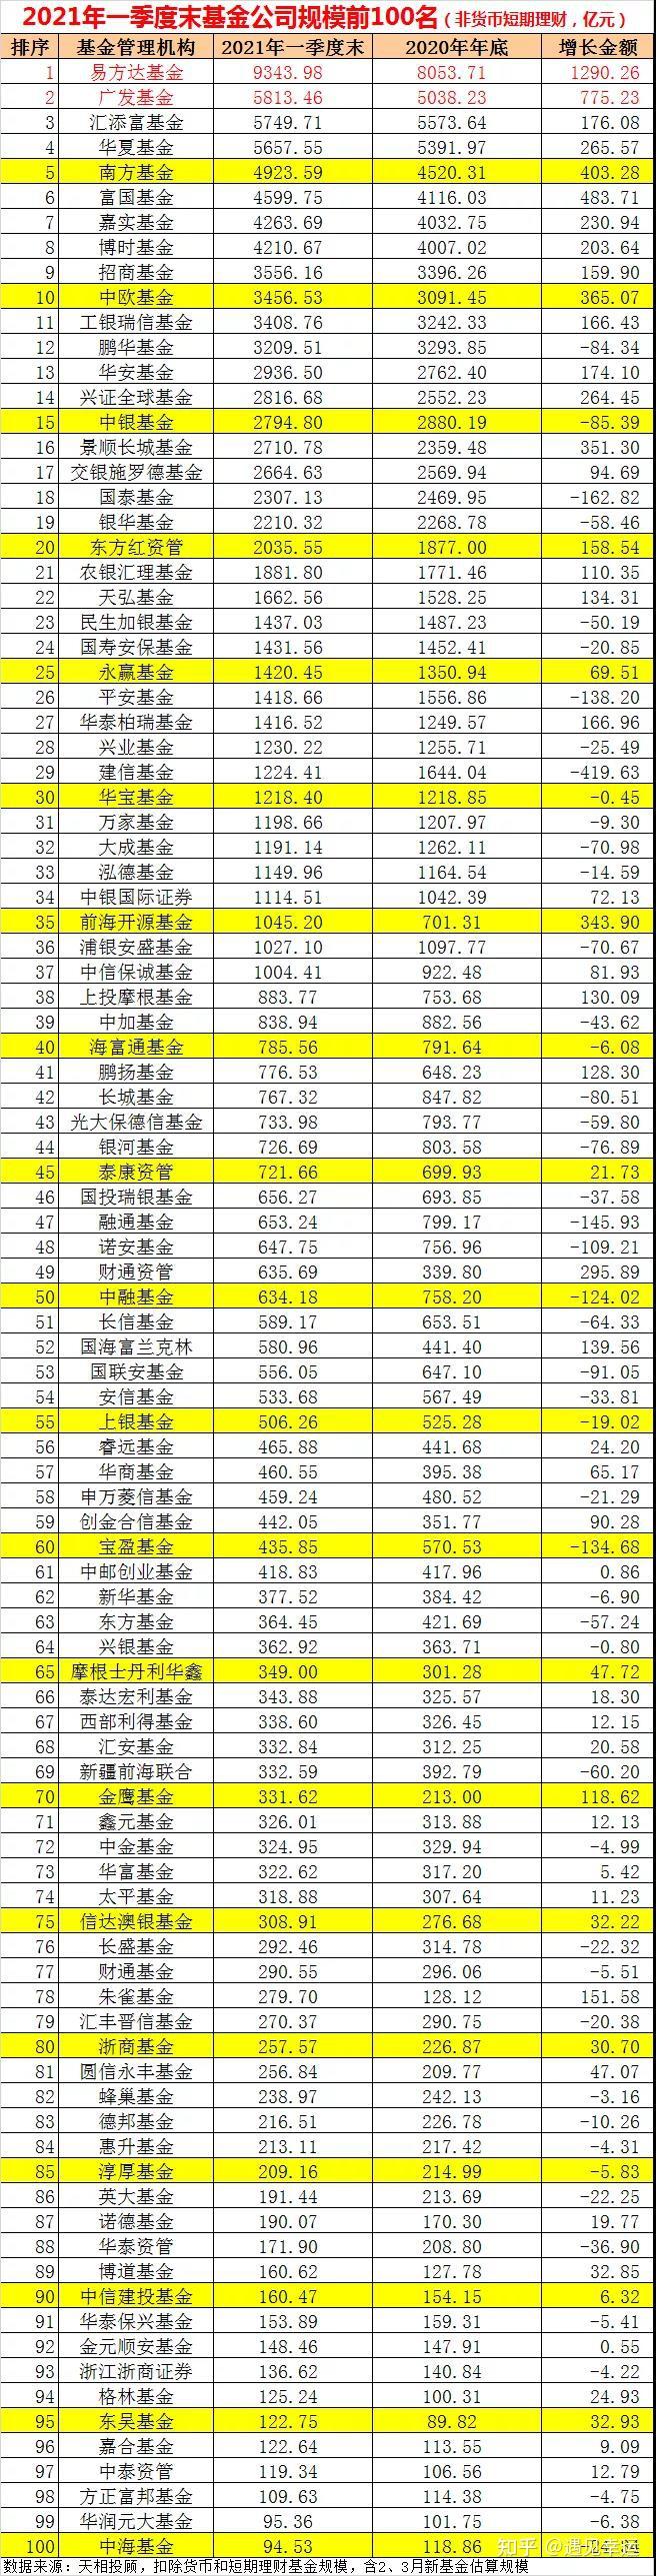 中国前十的基金公司排名是哪些